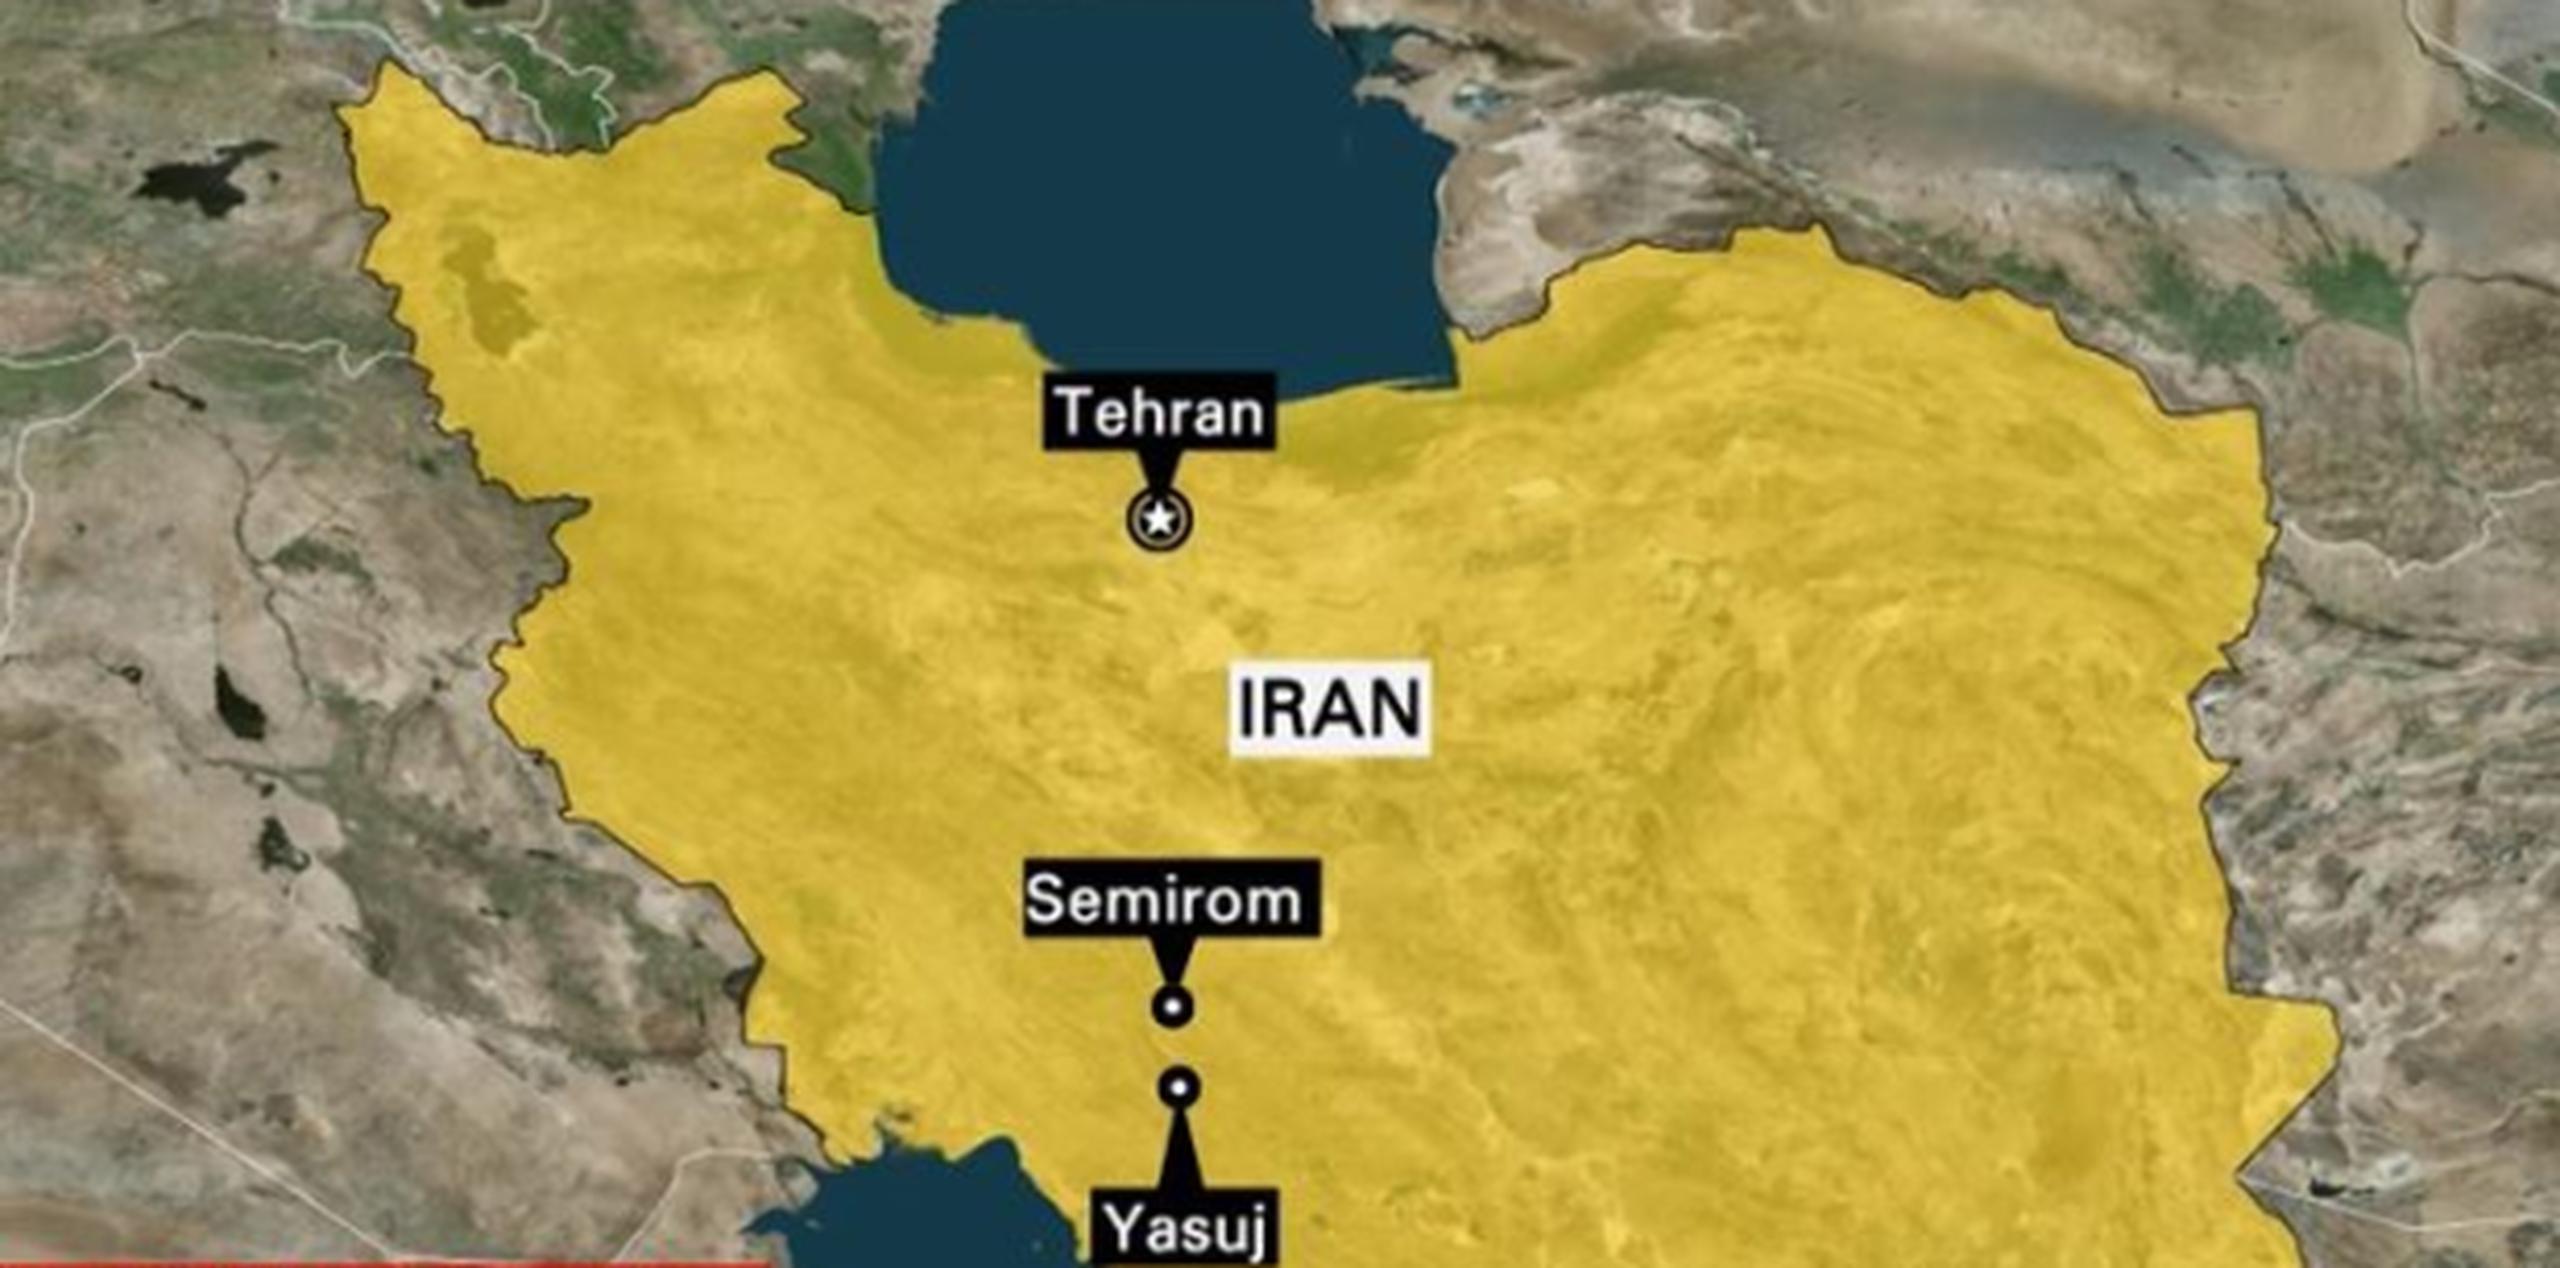 Los aldeanos cerca del accidente vieron llamas provenientes del motor del avión antes del accidente, de acuerdo con un informe de la agencia estatal de noticias iraní Mizan. (Captura CNN)